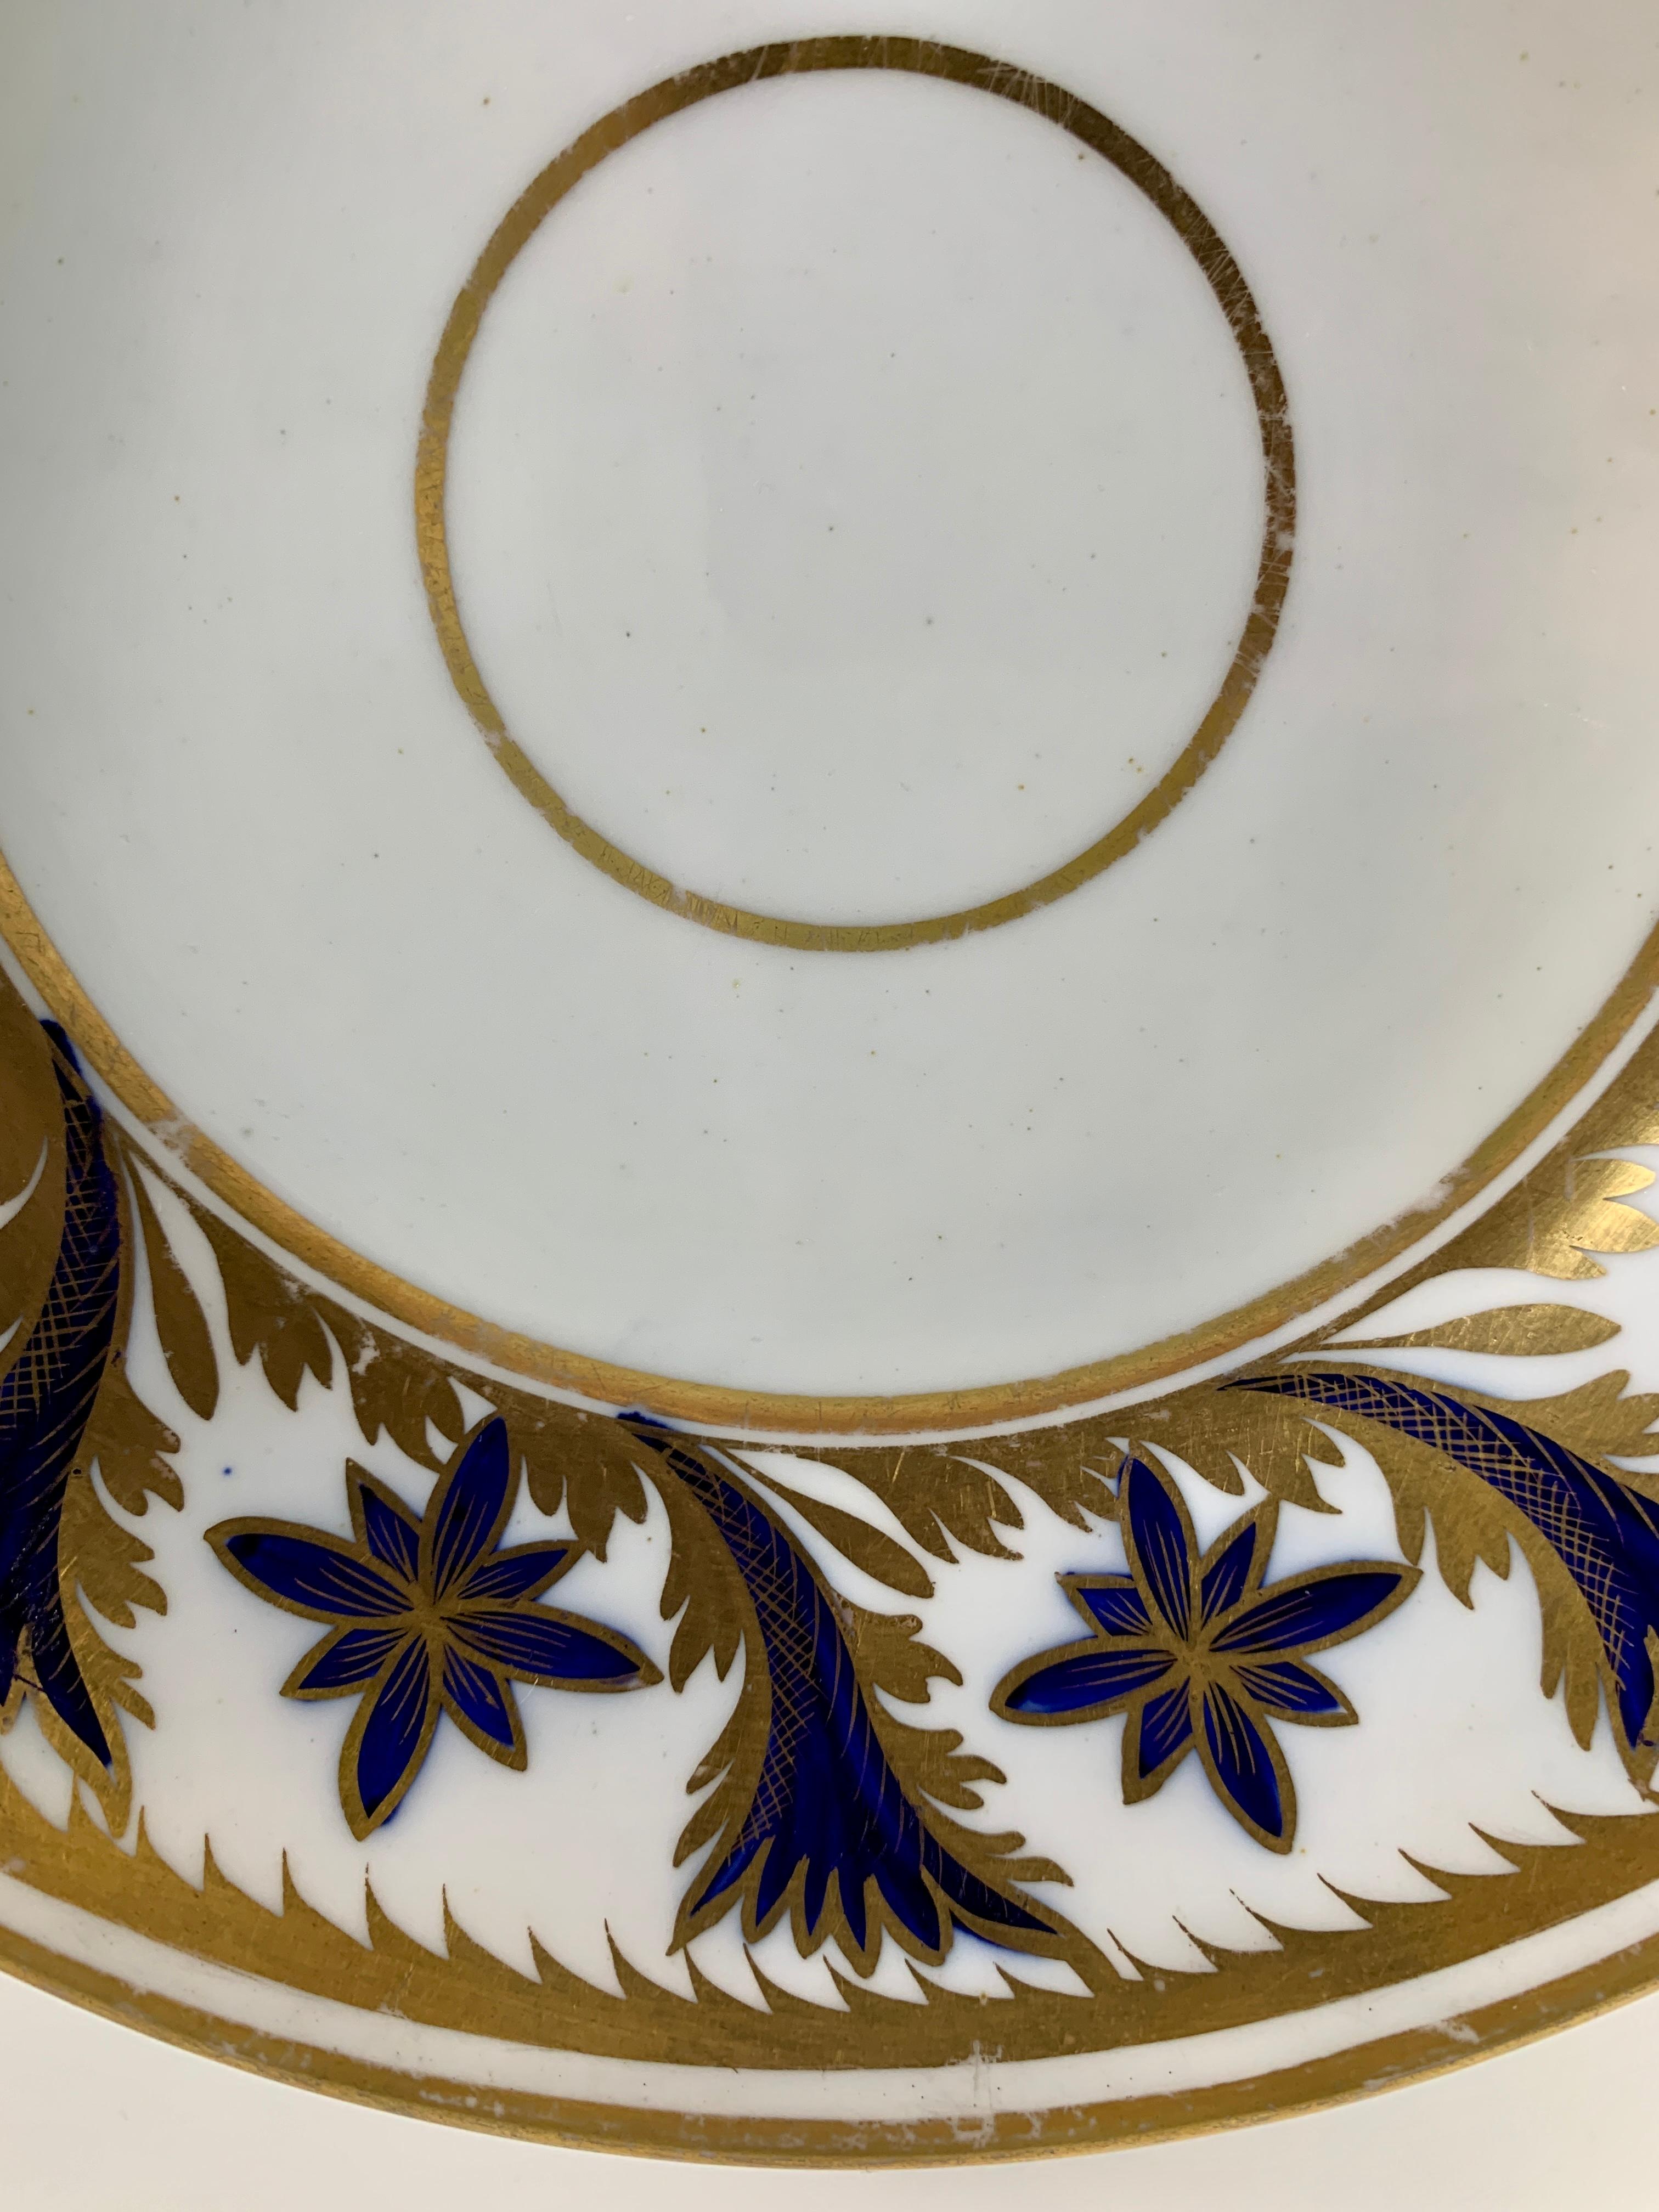 Provenienz: Die Privatsammlung von Mario Buatta
Eine Coalport-Schale mit schönem kobaltblauem und goldenem Dekor auf einem breiten Rand. 
Die um 1820 in England hergestellte Schale ist handbemalt und handvergoldet. 
Der Maler und Vergolder hätte